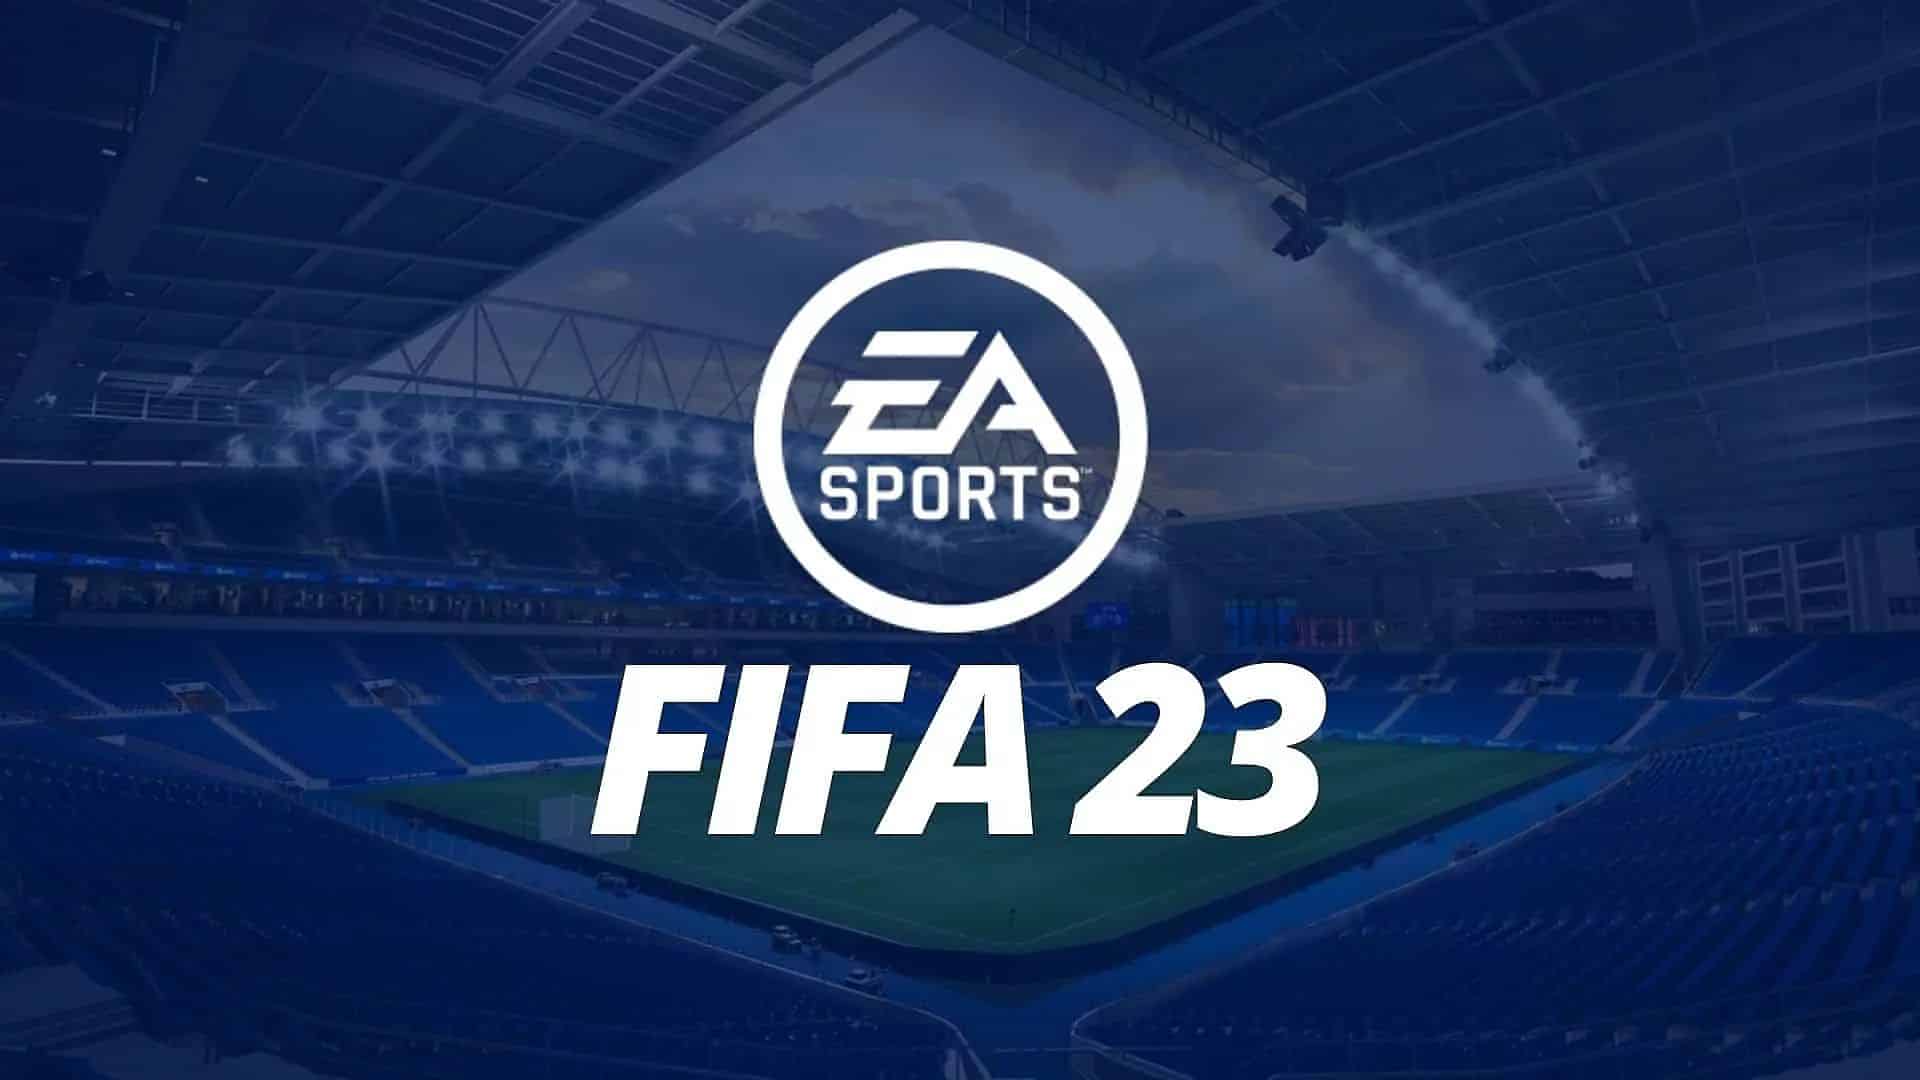 FIFA 23 показала самый успешный старт в истории франшизы: 10,3 млн игроков за неделю